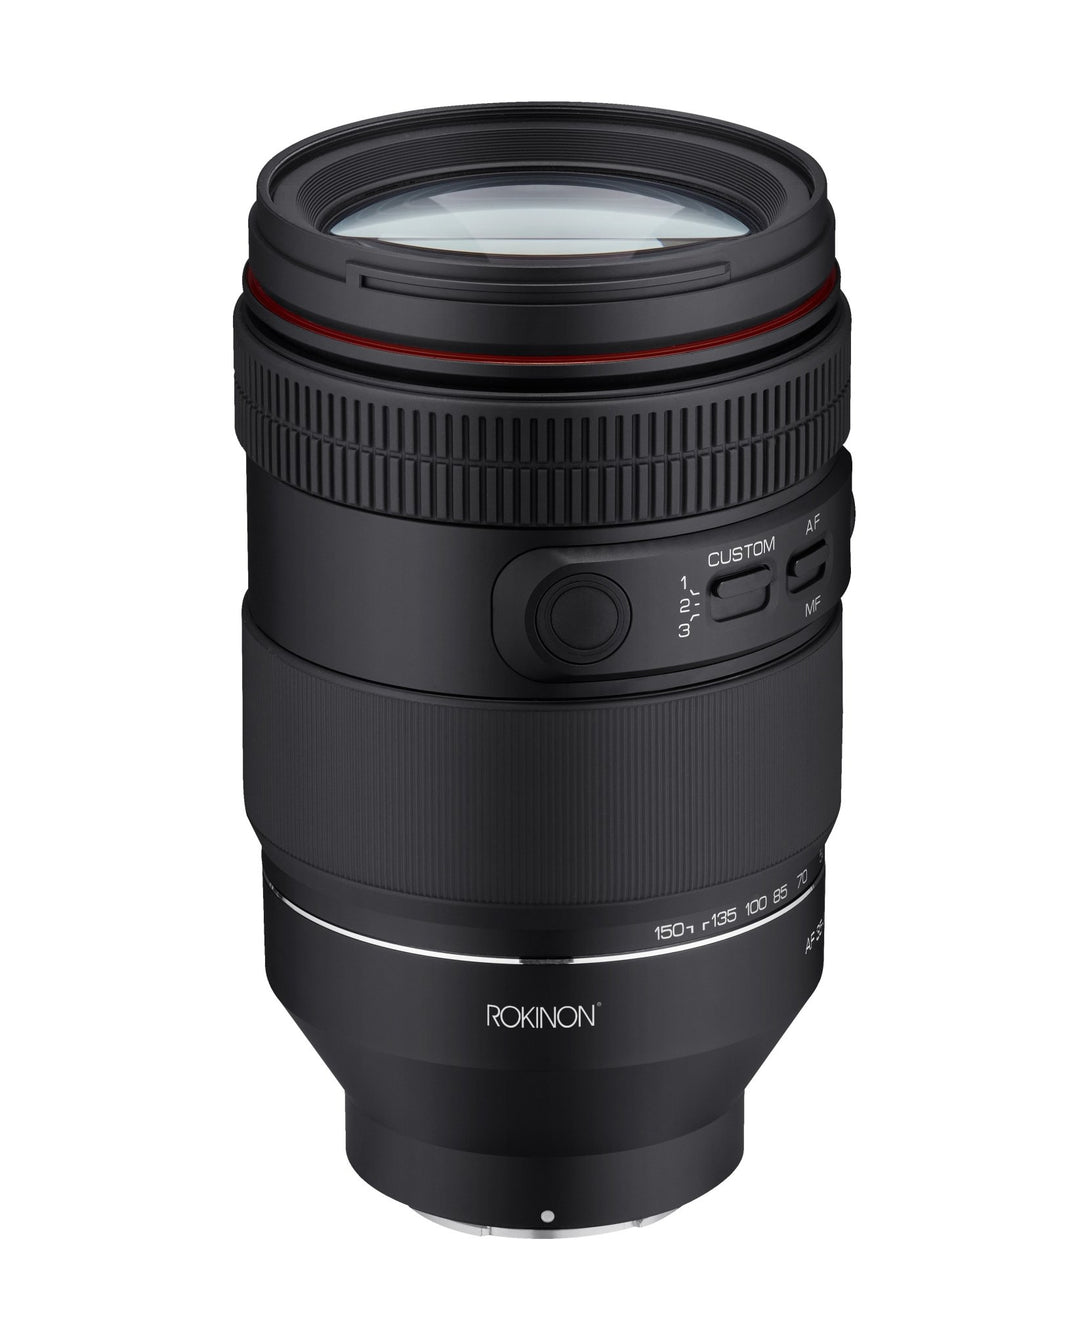 35-150mm F2-2.8 AF Full Frame Zoom Lens (Sony E) - Rokinon